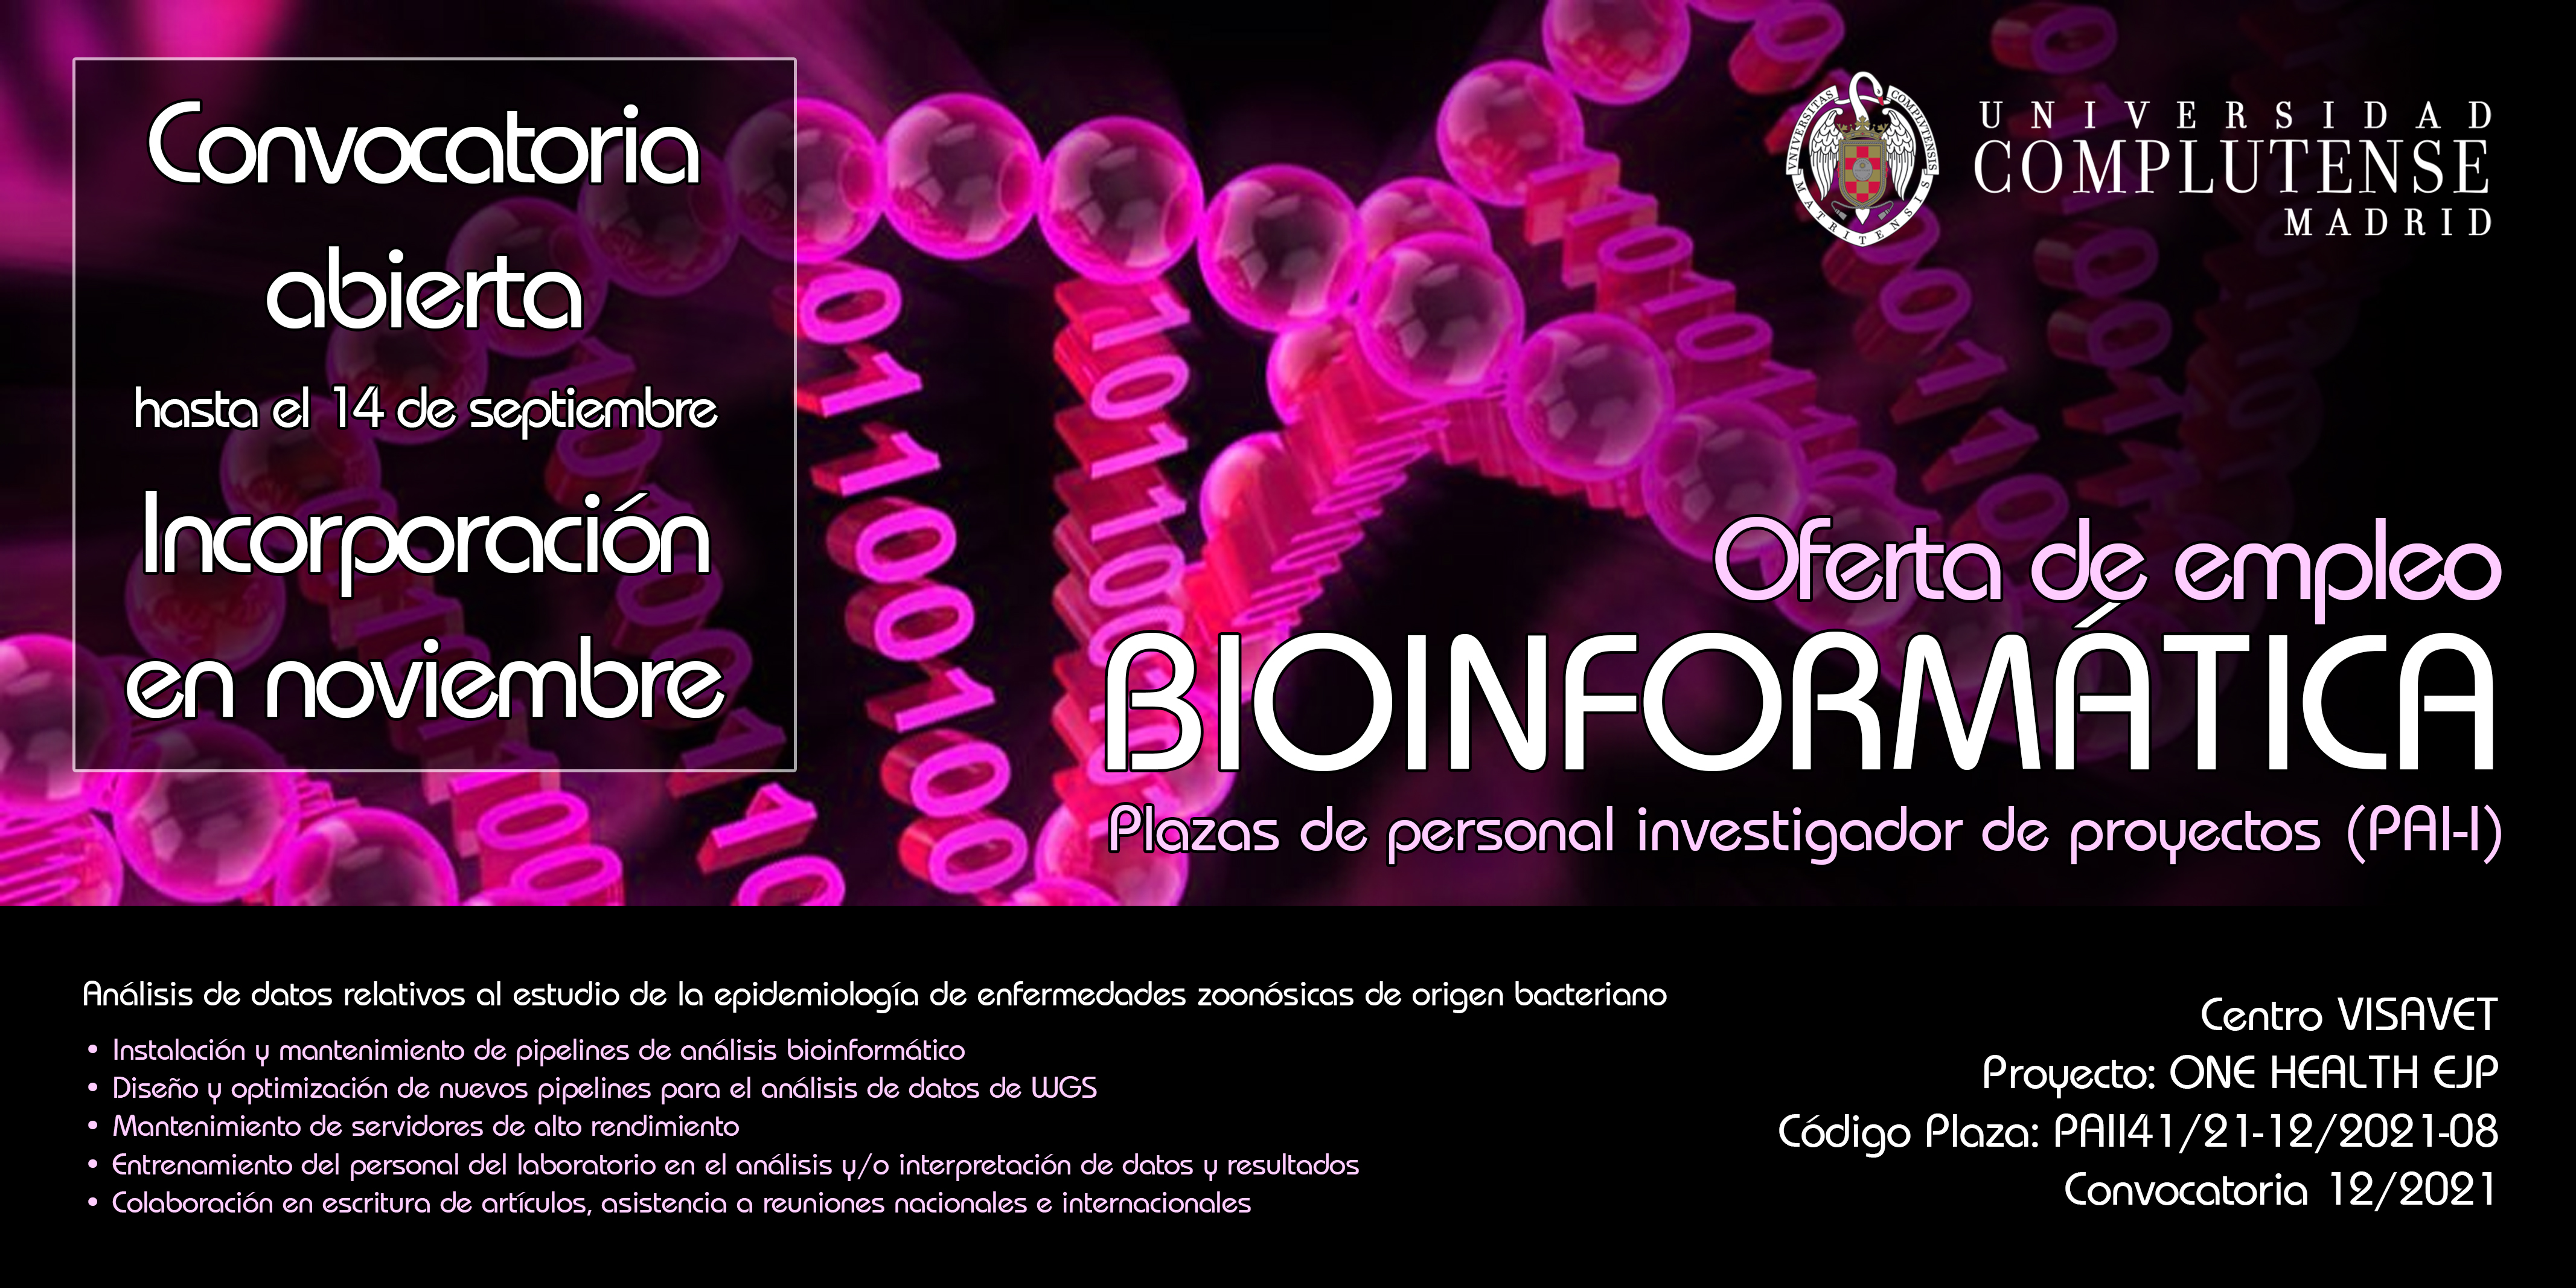 Bioinformático